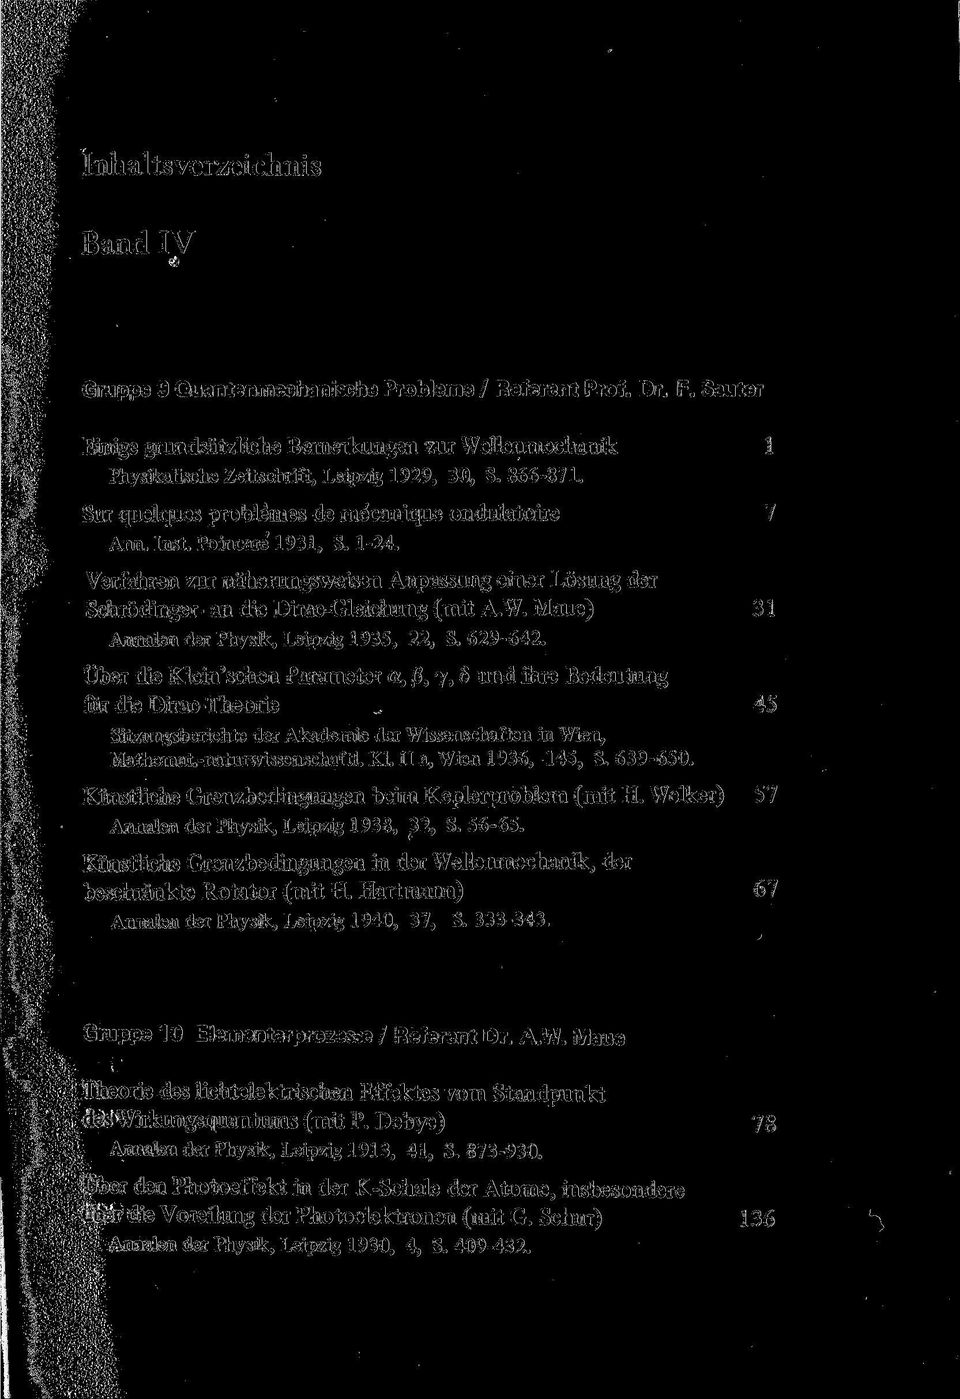 Maue) 31 Annalen der Physik, Leipzig 1935, 22, S. 629-642. Über die Klein'schen Parameter a, ß, y, 6 und ihre Bedeutung für die Dirac-Theorie.